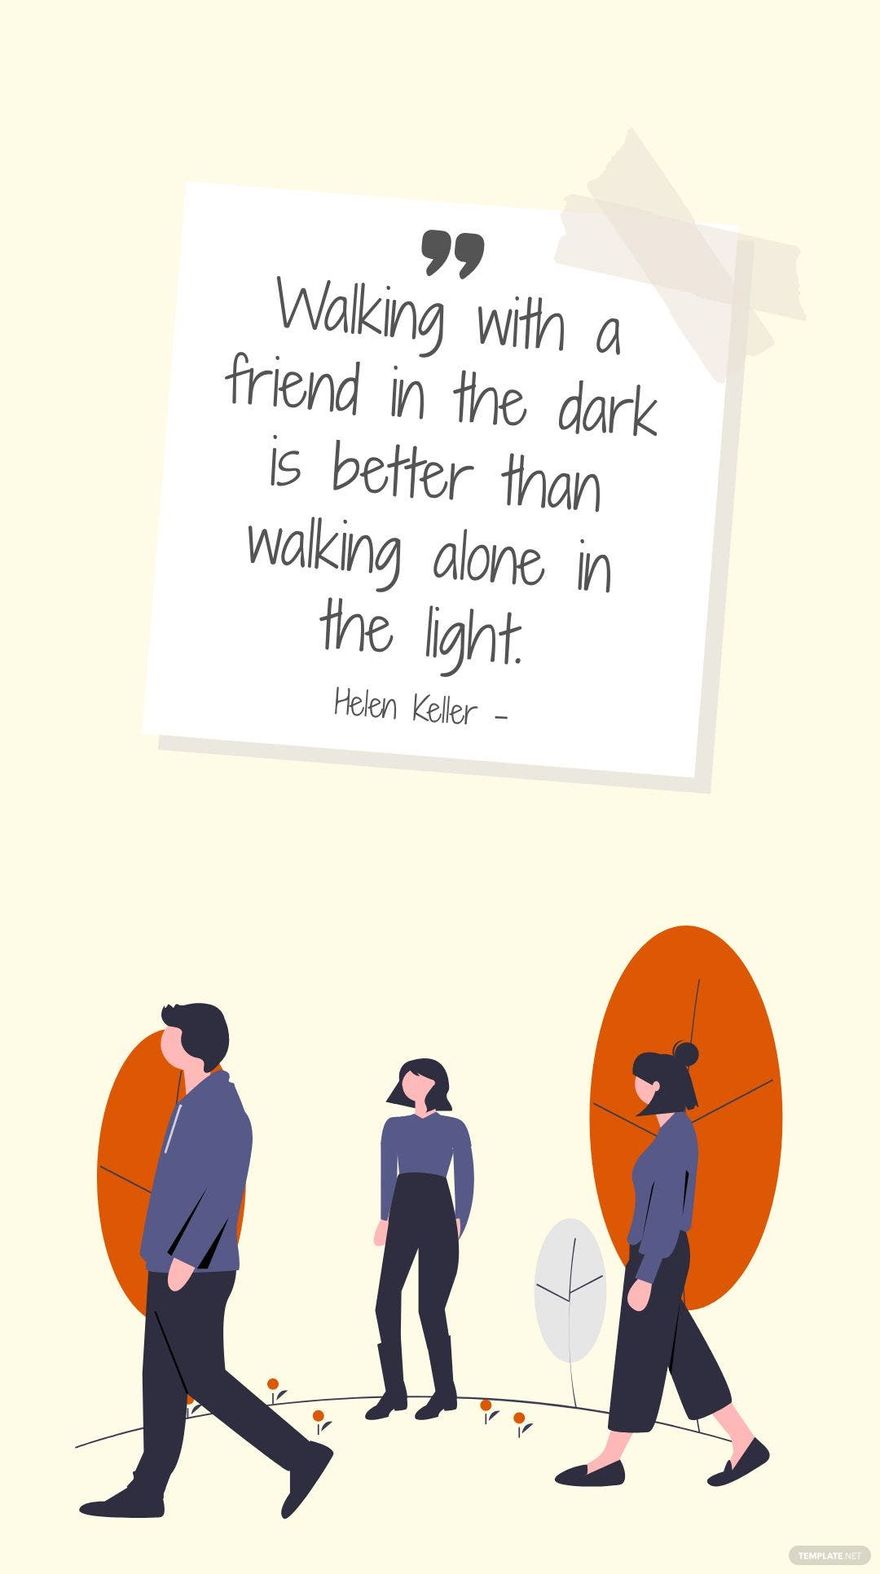 Helen Keller - Walking with a friend in the dark is better than walking alone in the light.